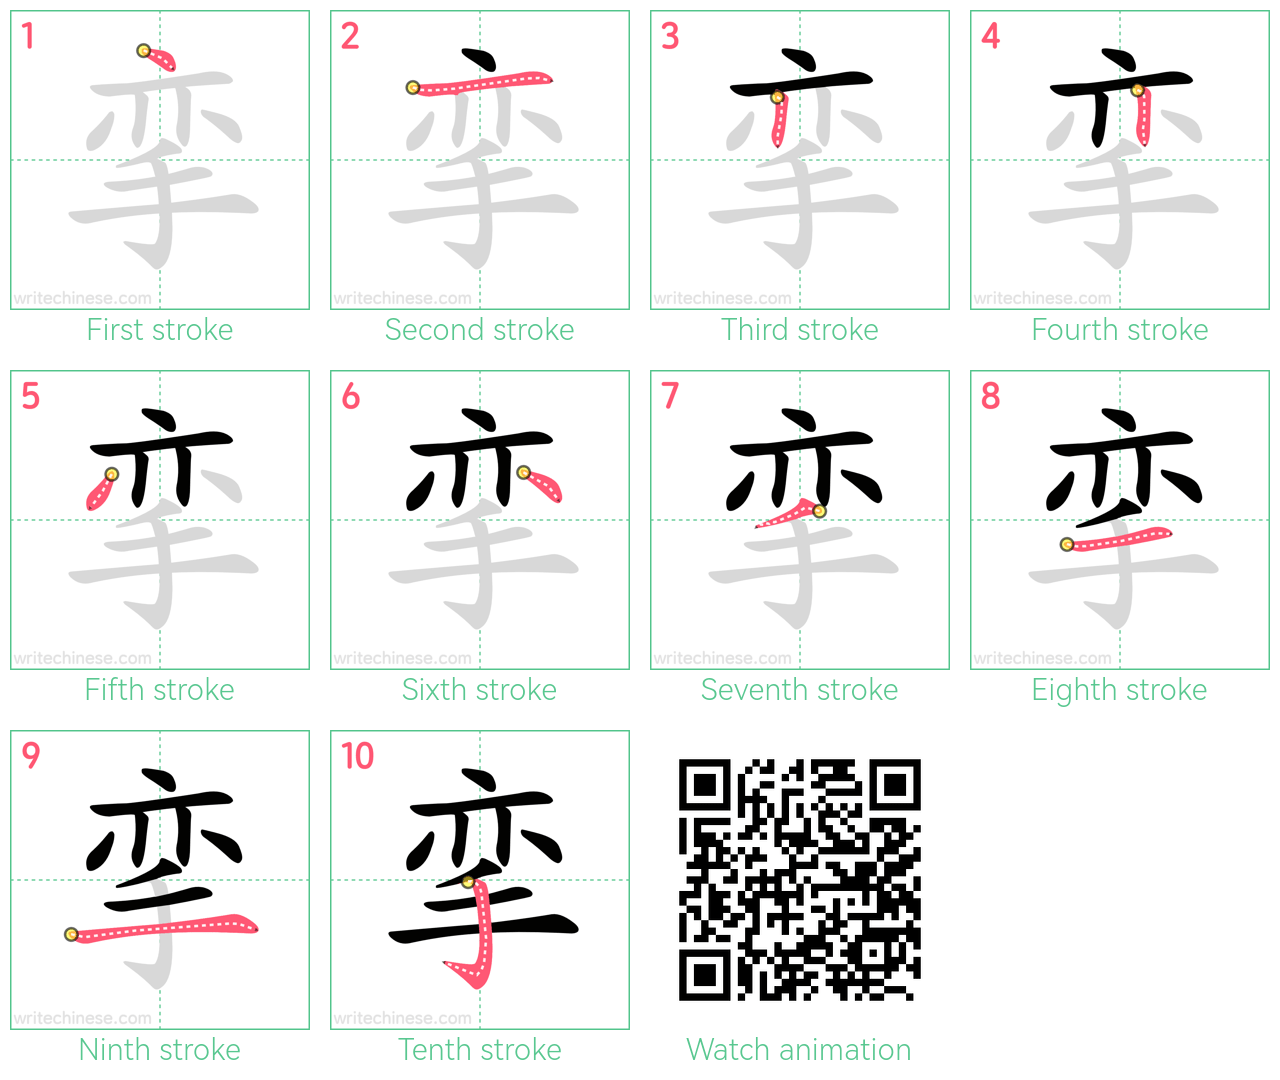 挛 step-by-step stroke order diagrams